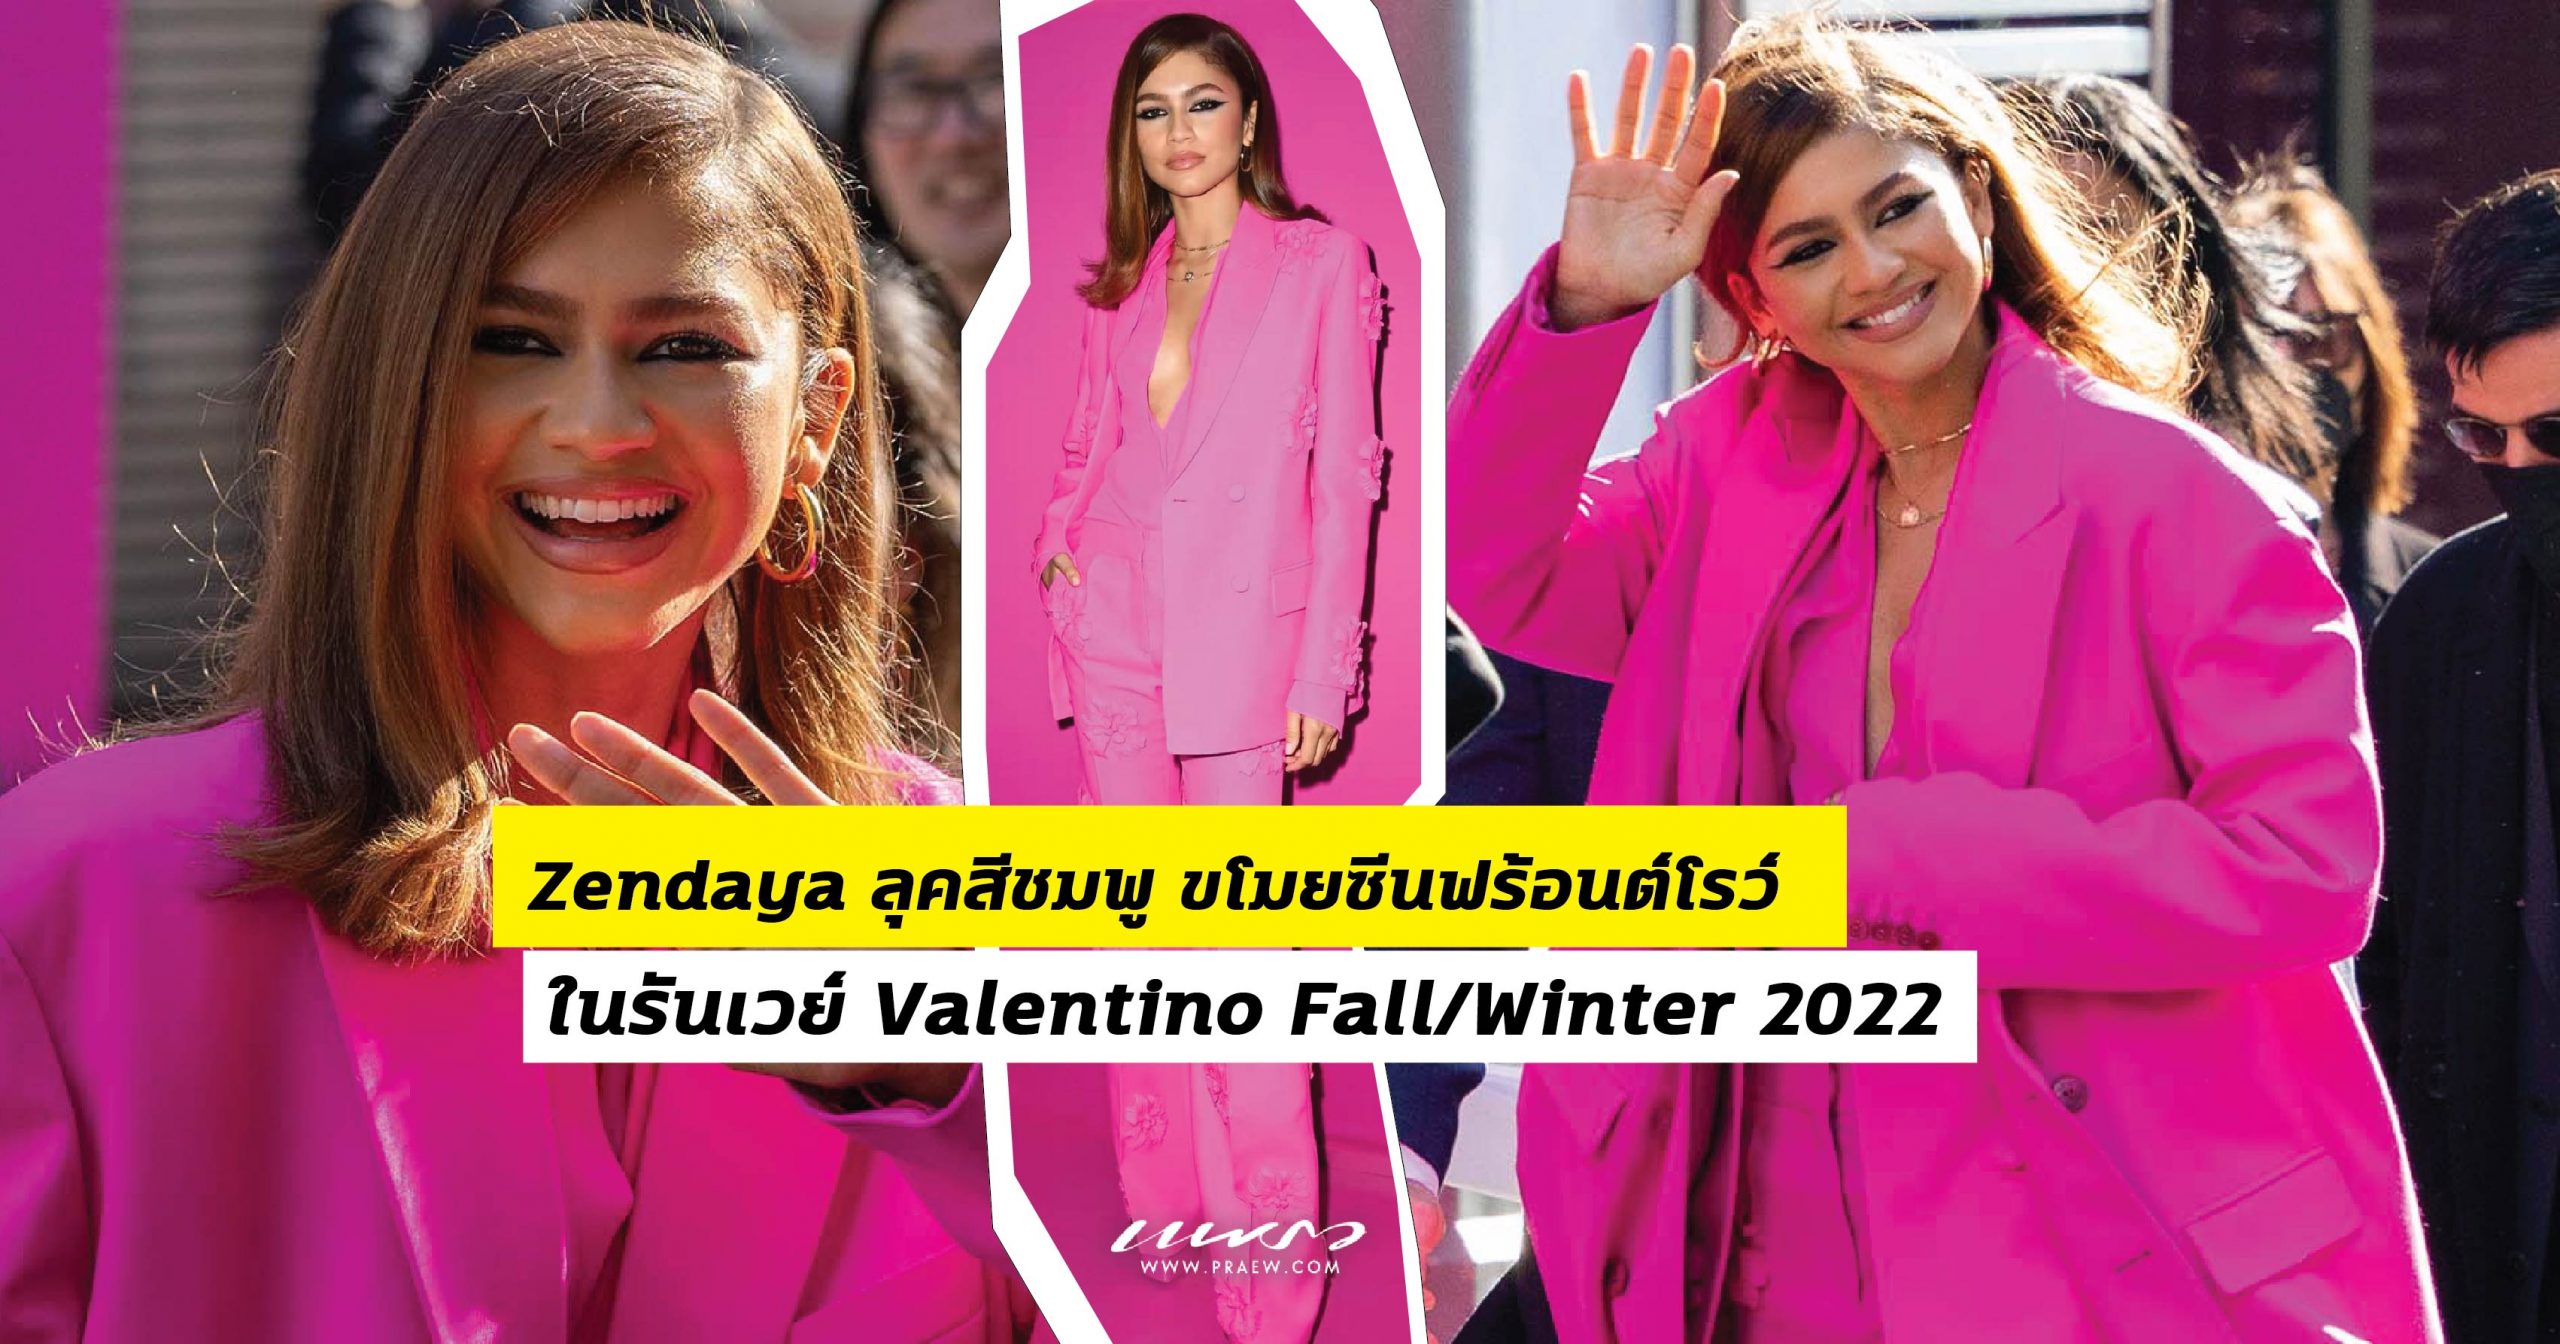 Zendaya ลุคสีชมพู ขโมยซีนฟร้อนต์โรว์ ในรันเวย์ Valentino Fall/Winter 2022